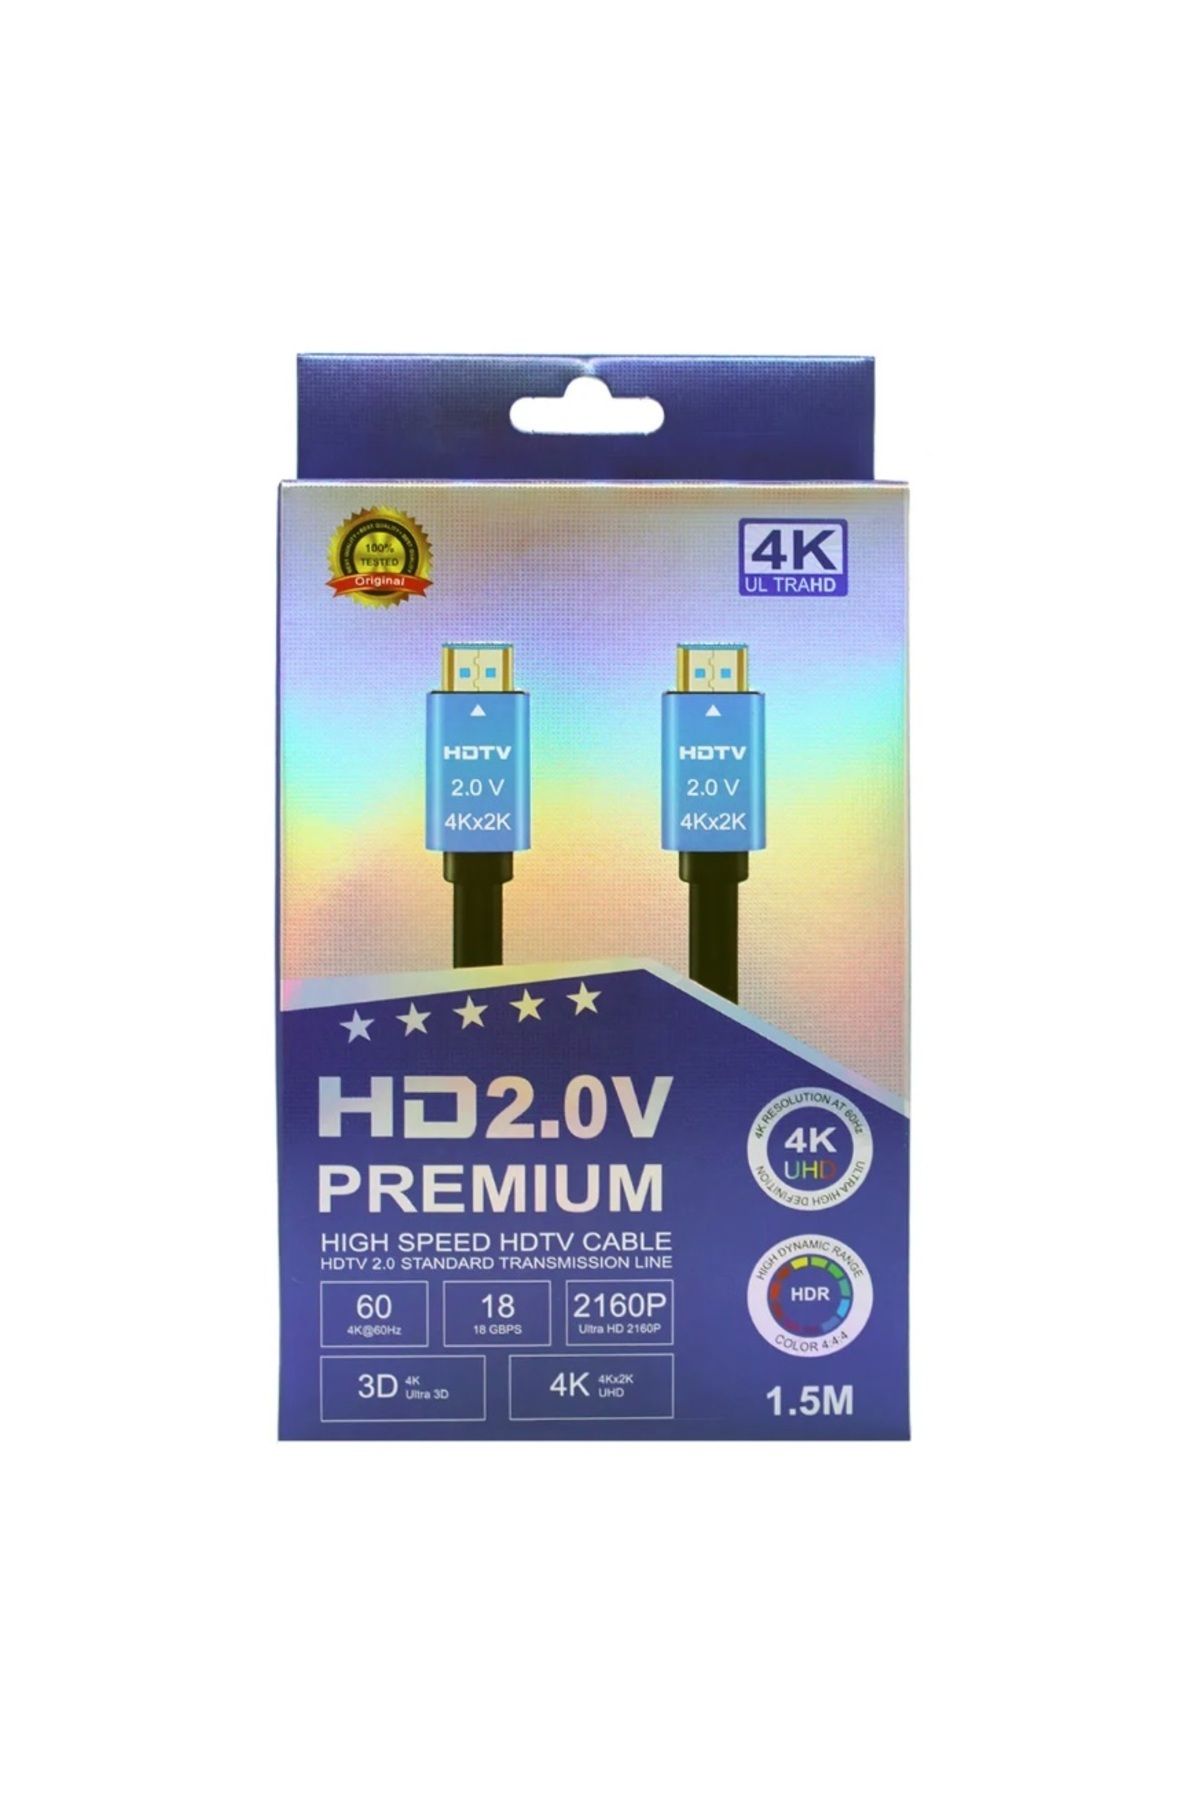 VİVATECH HDTV Premium Yüksek hızlı 4K Ultra HD HDMI 2.0 Ses ve Görüntü Kablosu